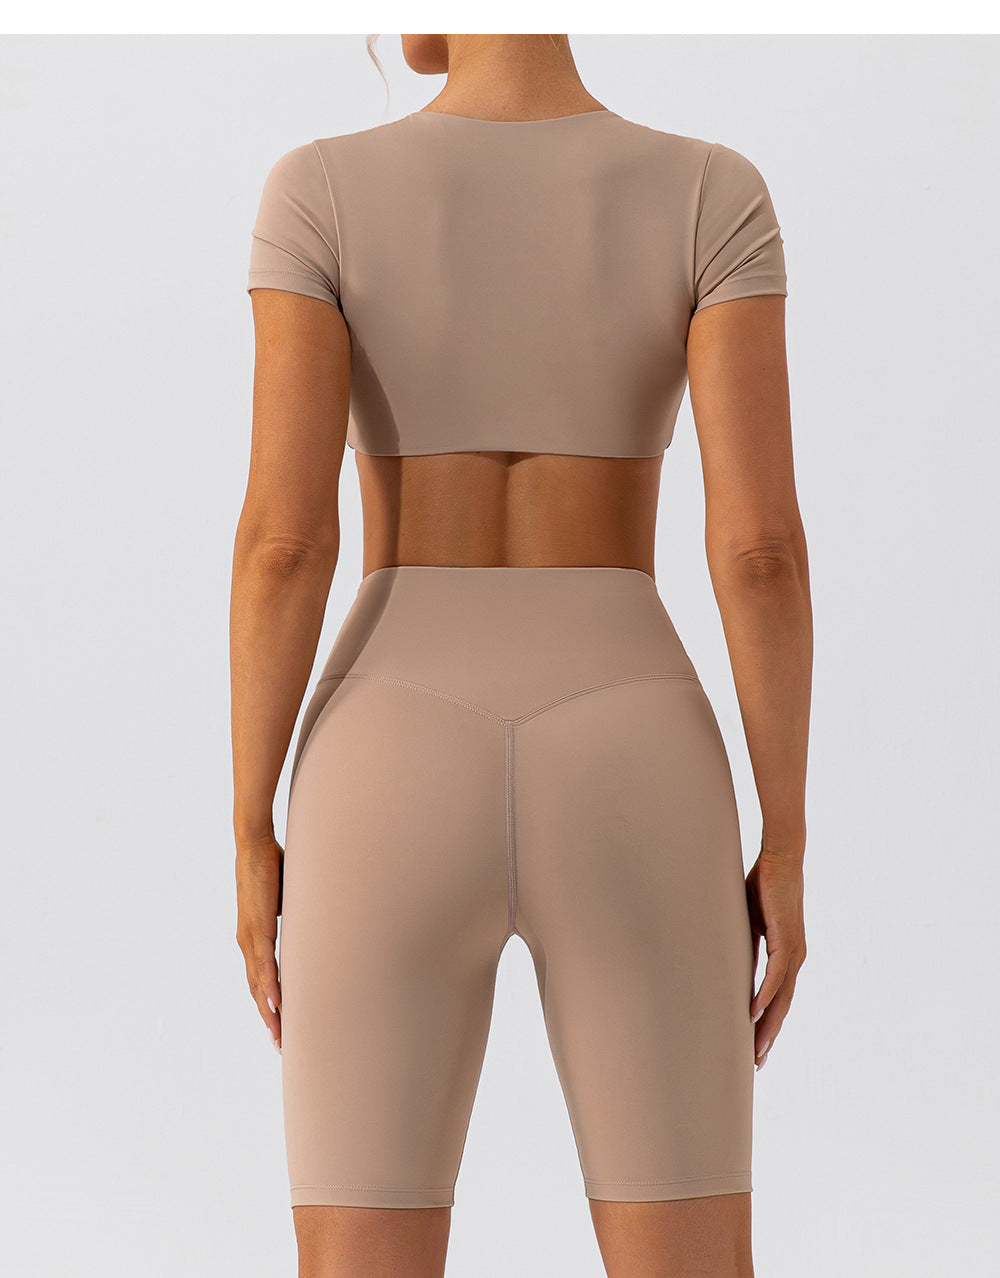 yoga clothing shorts suit short-sleeved beautiful back running sports yoga clothing suit for women